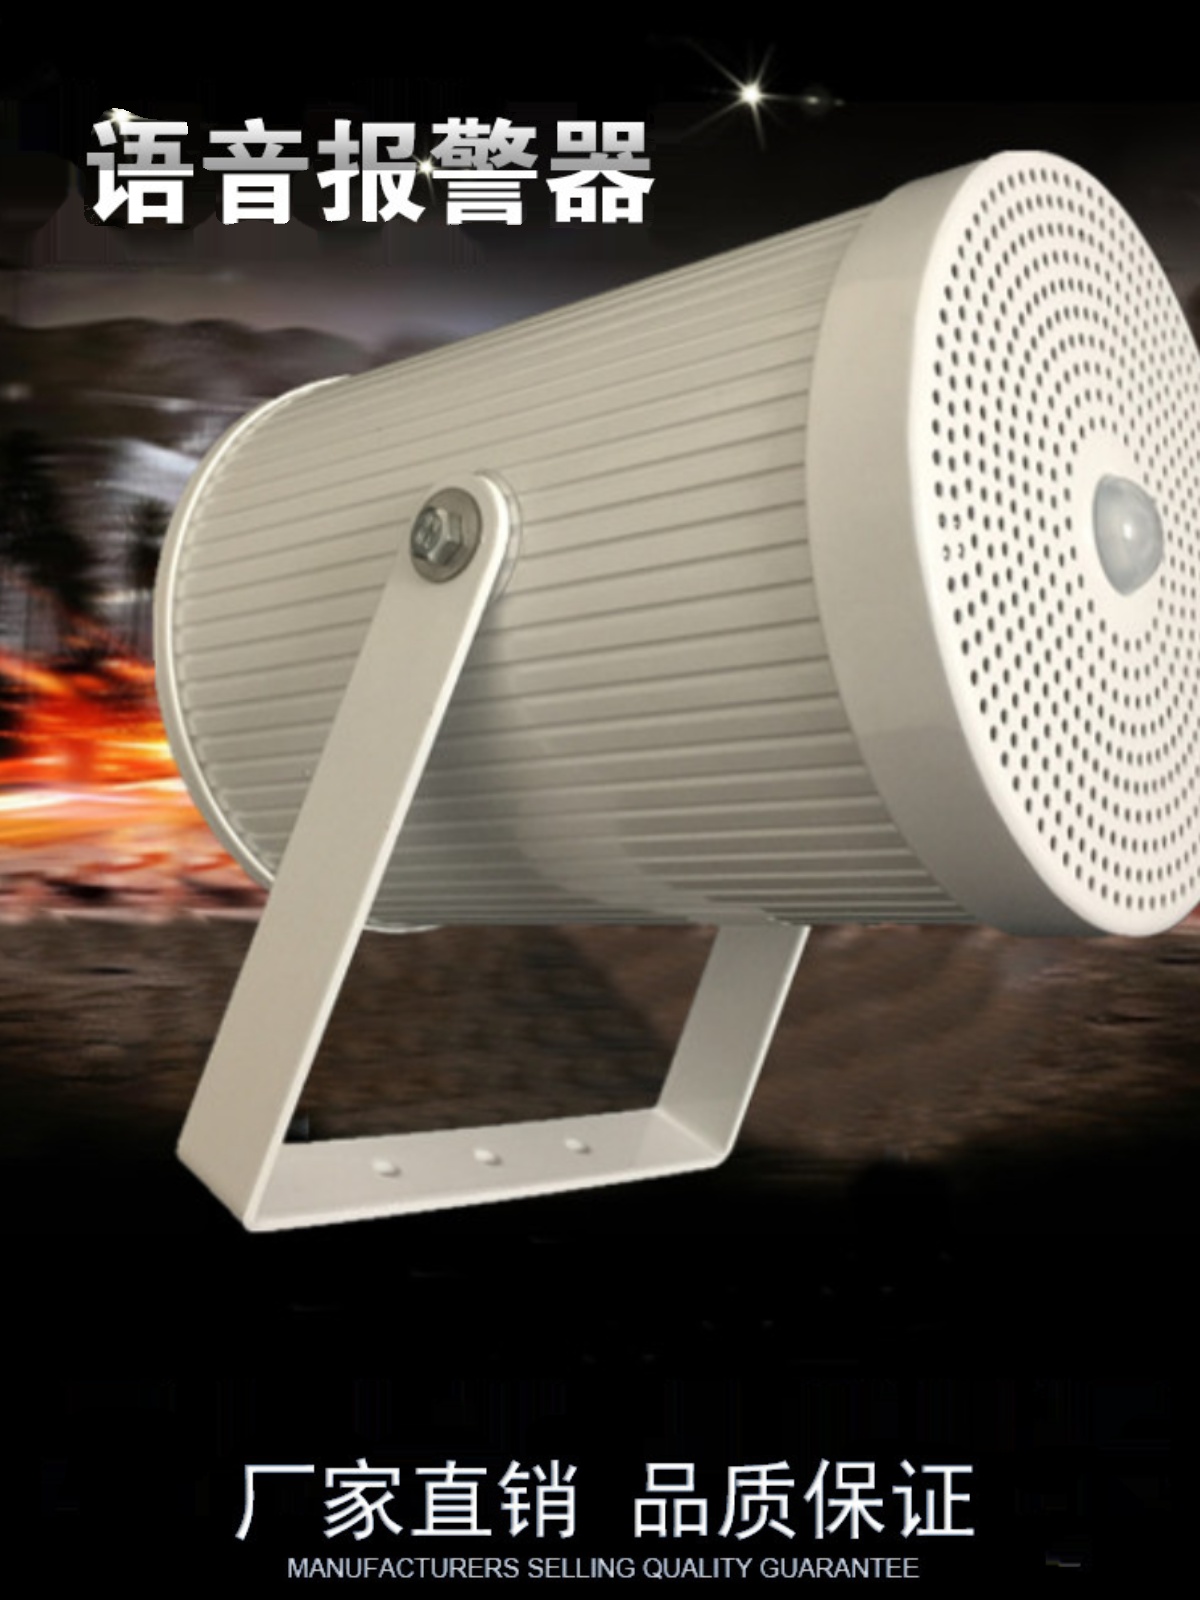 销售沈阳地铁扶梯器语音提示器红外感应播放器定向喇叭安全提示